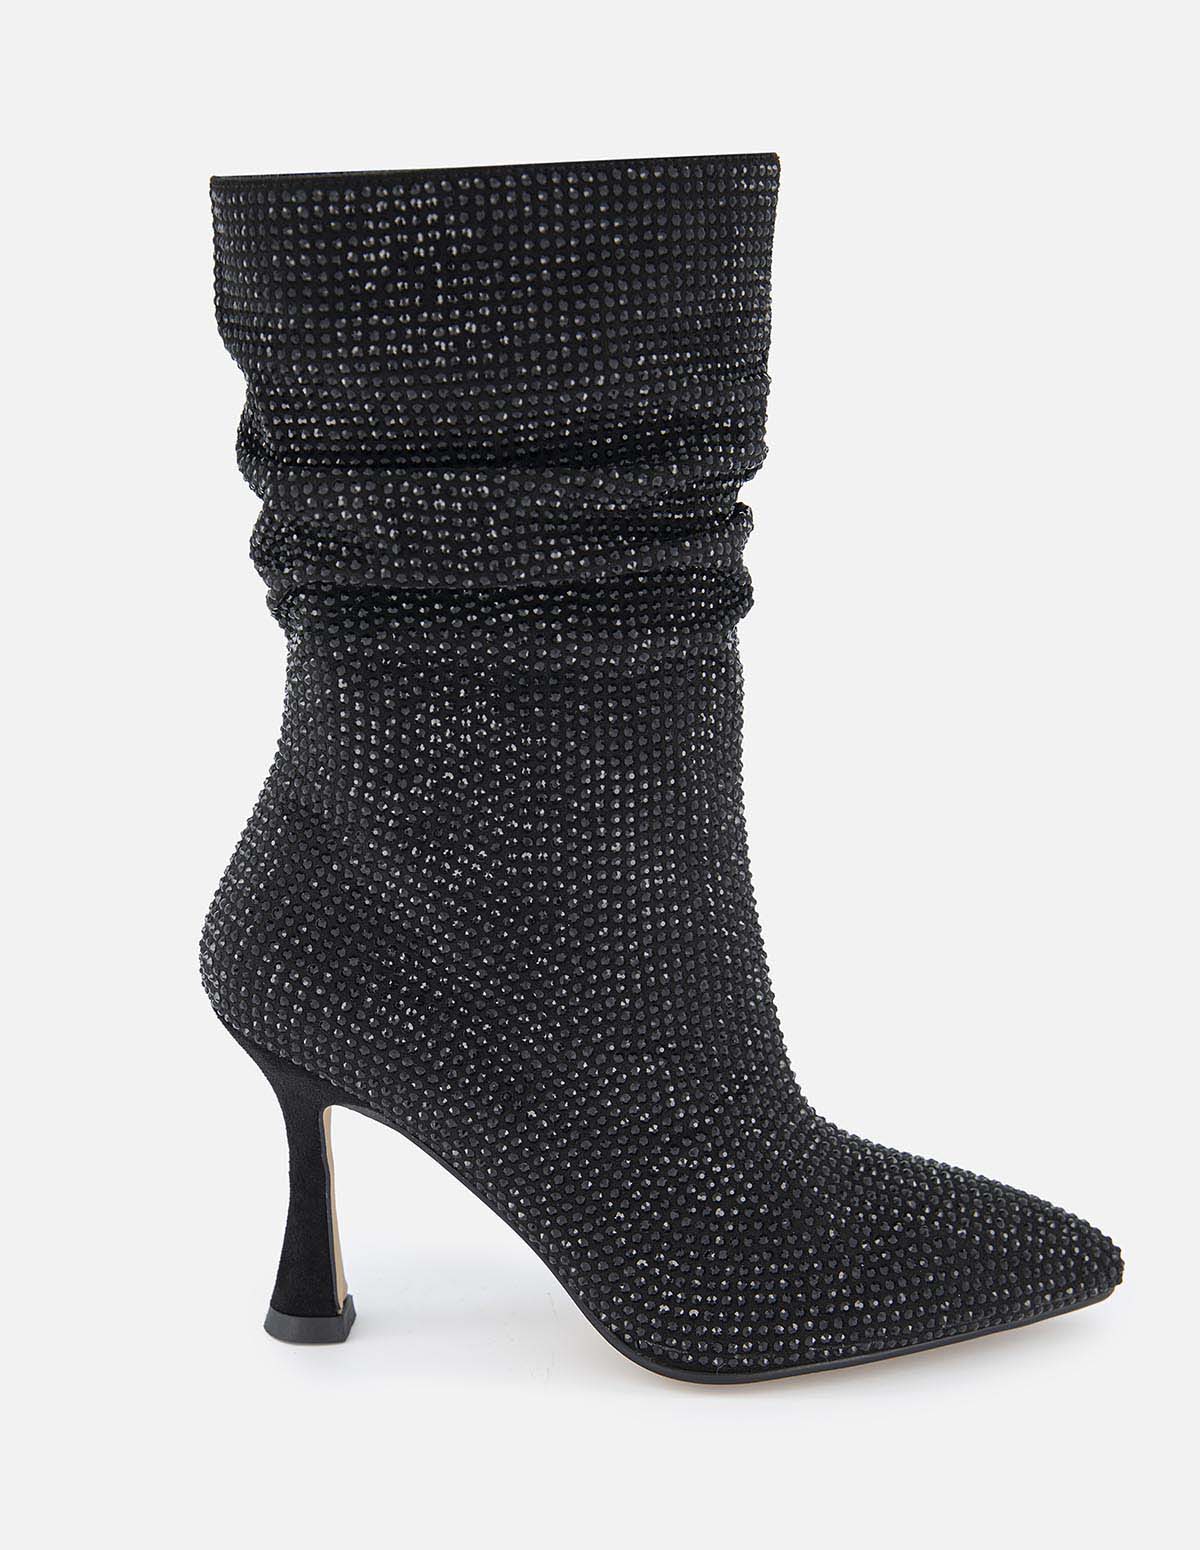 Zapato tipo Botín en textil con pedrería para mujer